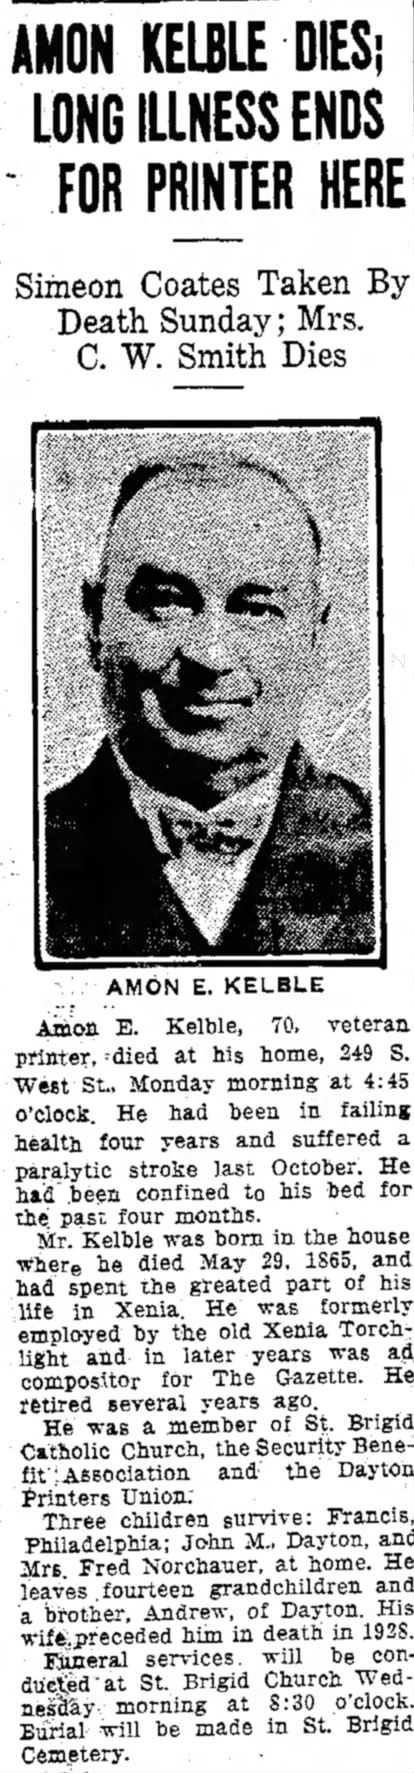 Amon E. Kelble Death - 12 Aug 1935